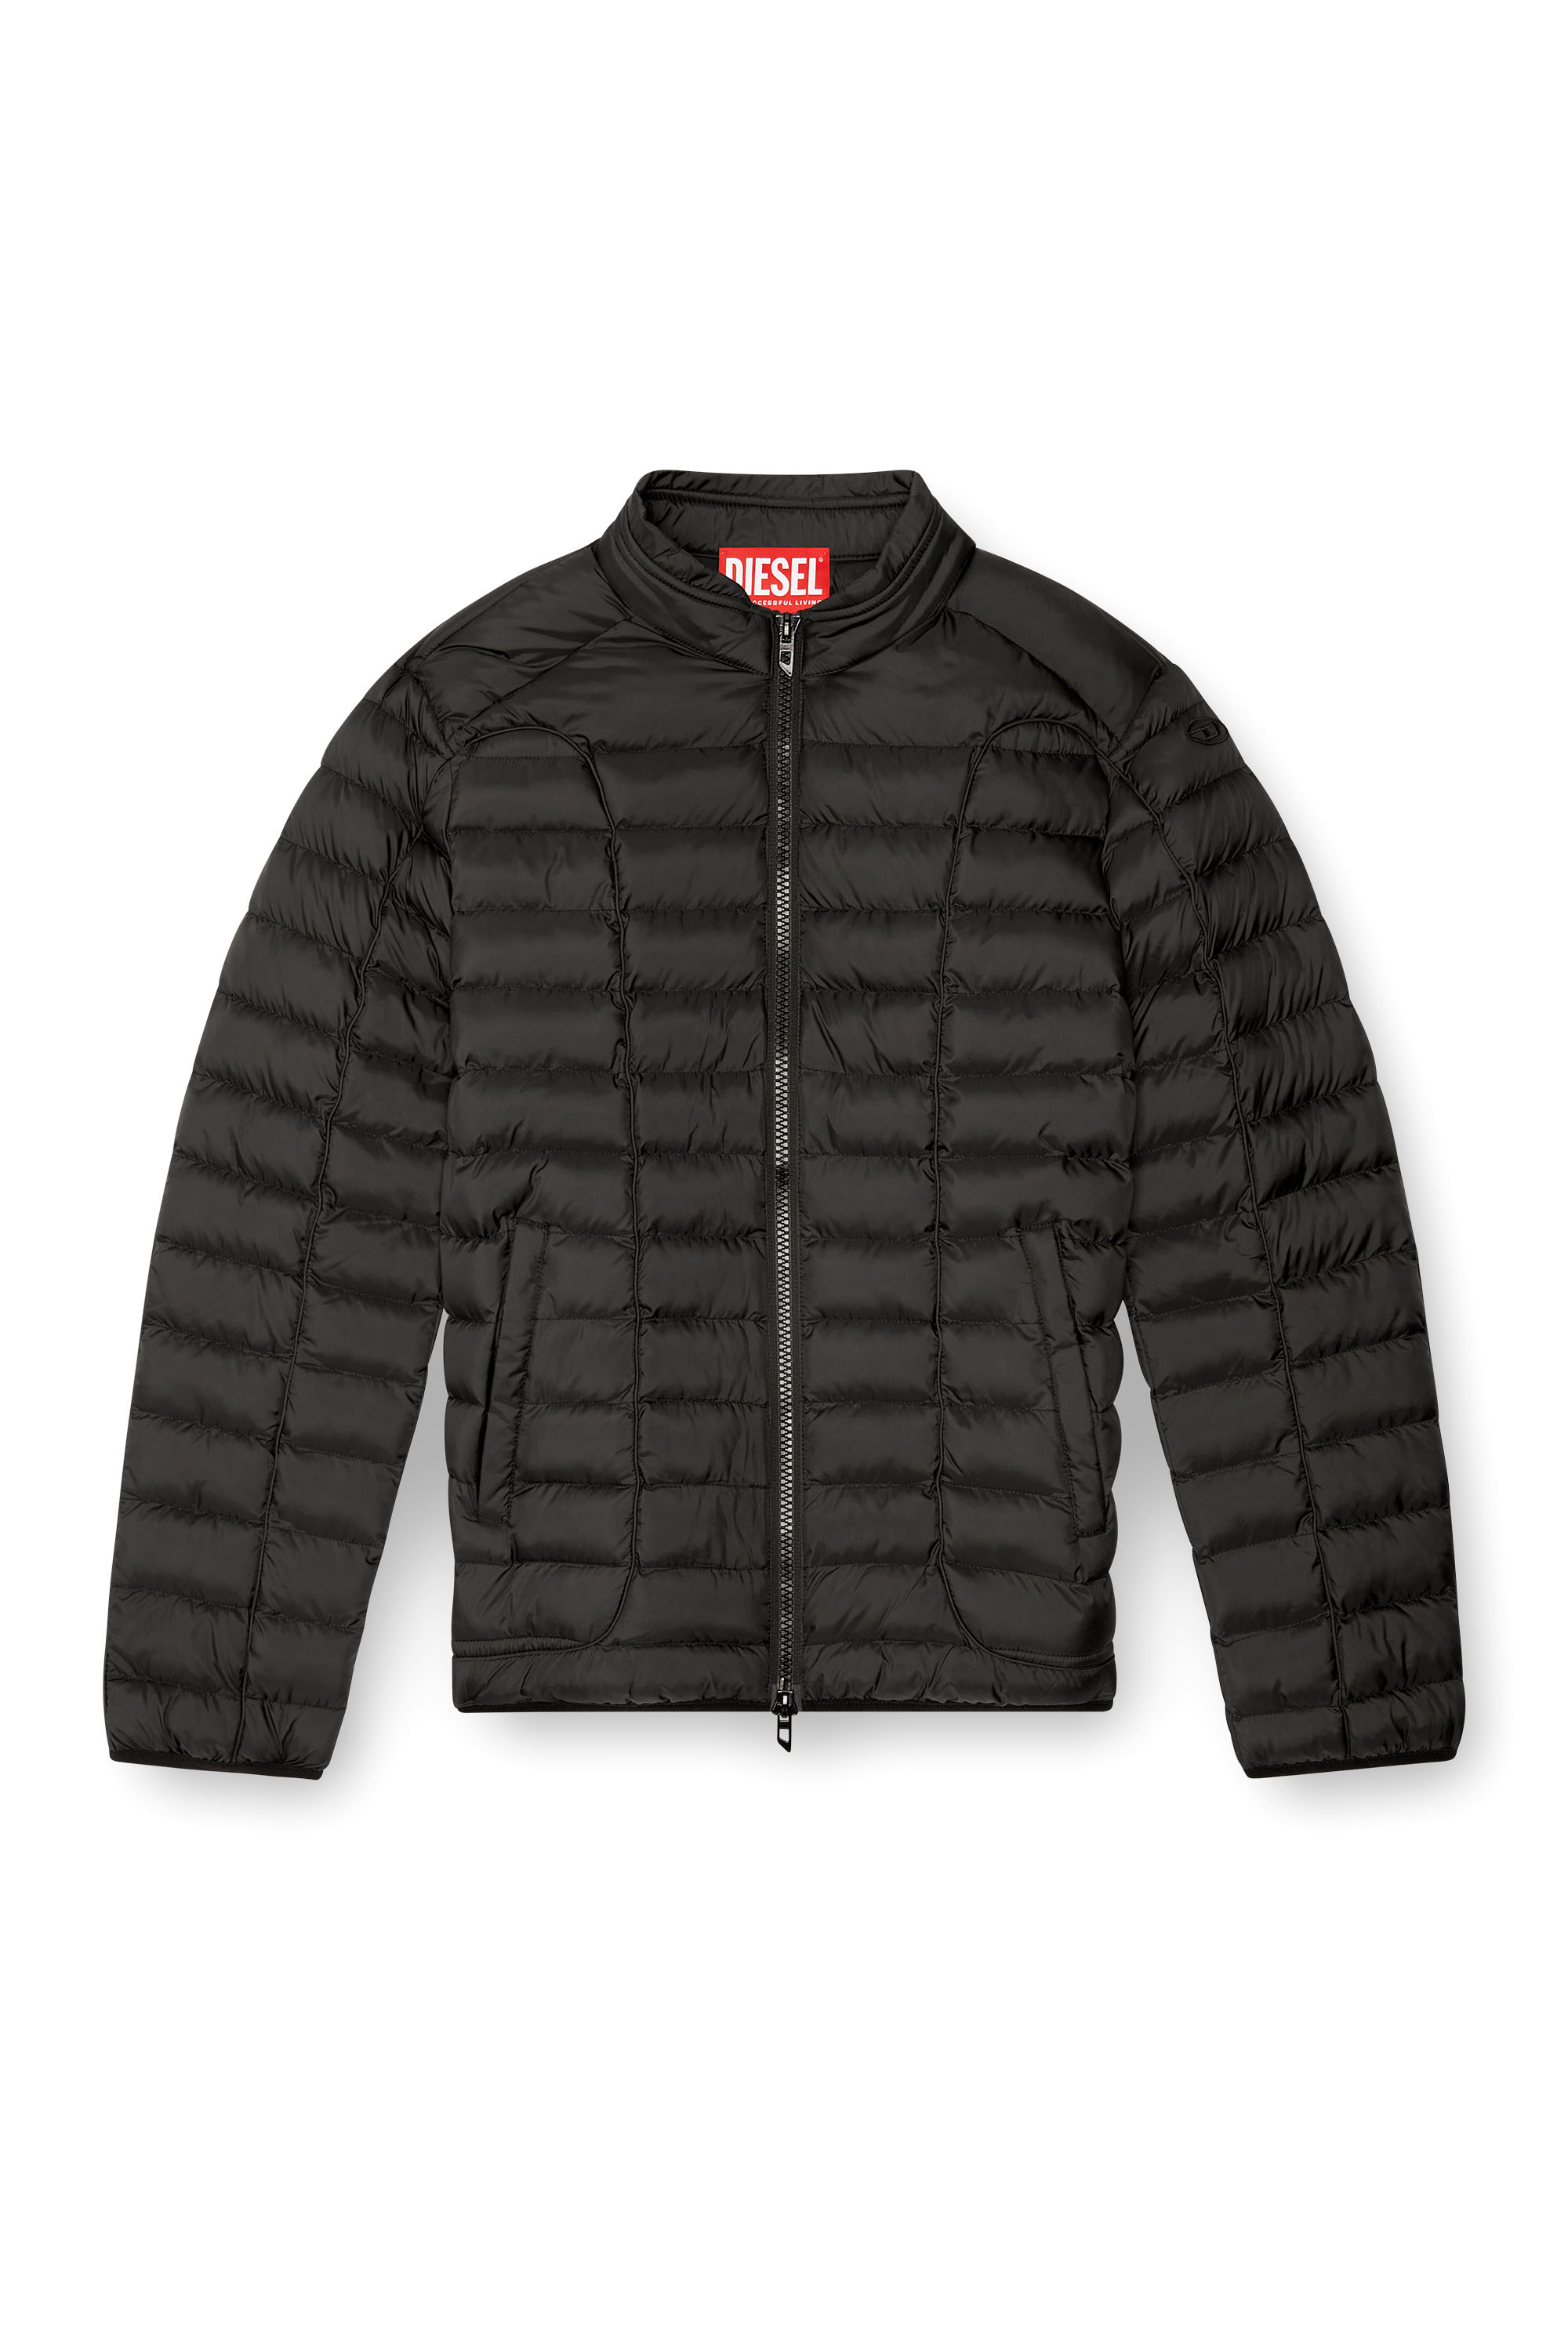 Diesel - W-PILOT, Man Puffer jacket in light nylon in Black - Image 6